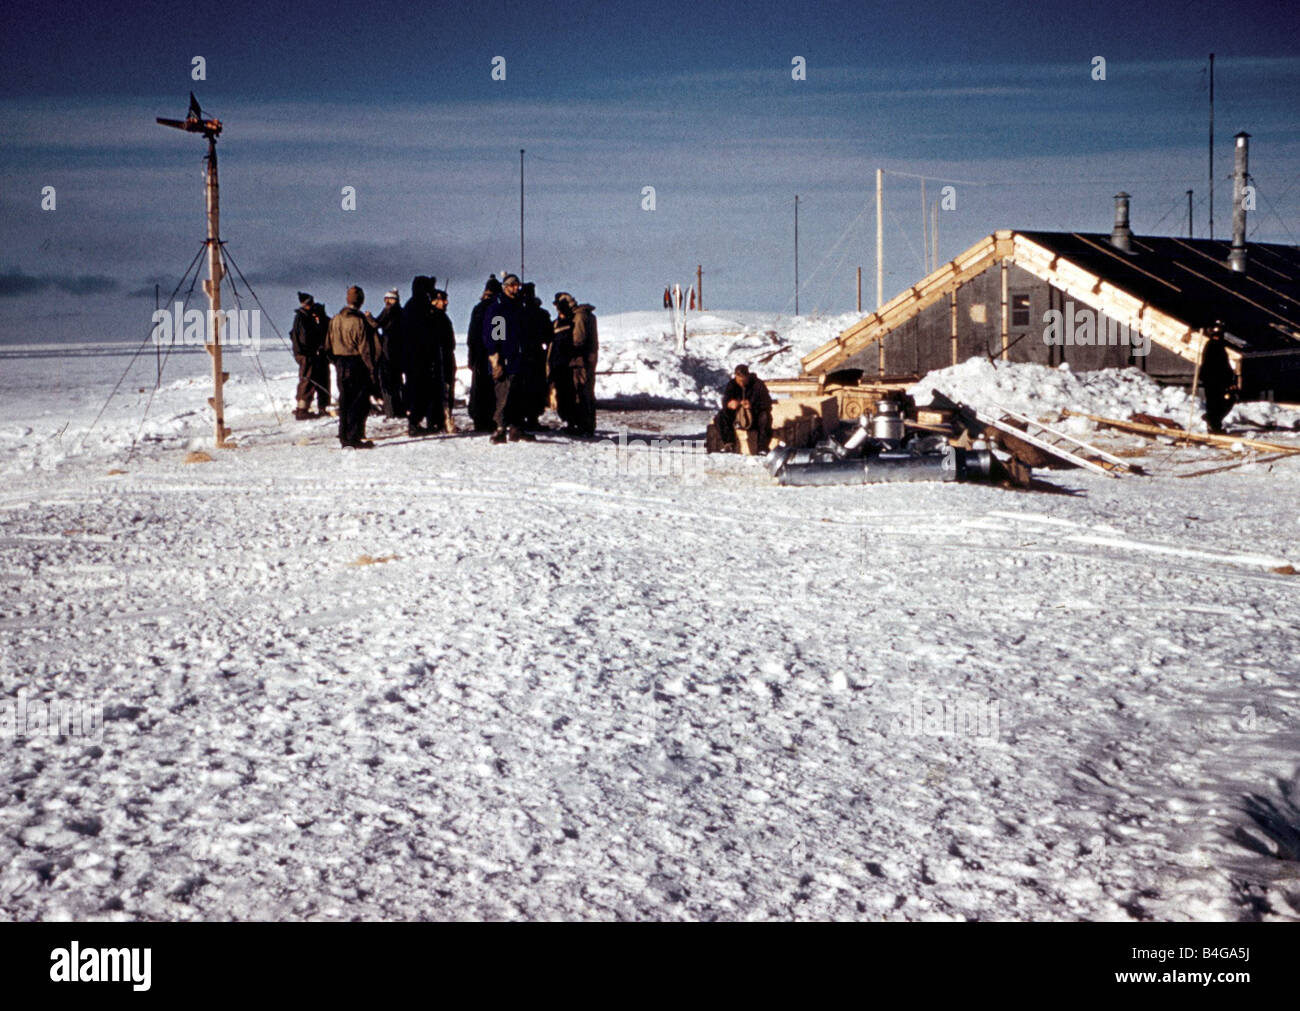 L'expédition Antarctique 1956 Trans 1958 Le camp montrant les membres du groupe extérieur leur log cabin Explorers réunit au Pôle Sud, les membres de l'équipe de tenter la première traversée en surface de l'Antarctique se sont regroupés au Pôle Sud Le Néo-zélandais Sir Edmund Hillary qui a déjà conquis l'Everest est arrivé avec son équipe il y a 17 jours tôt cet après-midi, Sir Edmund s'est félicité de l'équipe britannique dirigée par le Dr Vivian Bunny Fuchs au Pôle Sud les équipes britannique et néo-zélandais sont membres d'une expédition Antarctique Trans du Commonwealth mais déduites des extrémités opposées du continent Banque D'Images